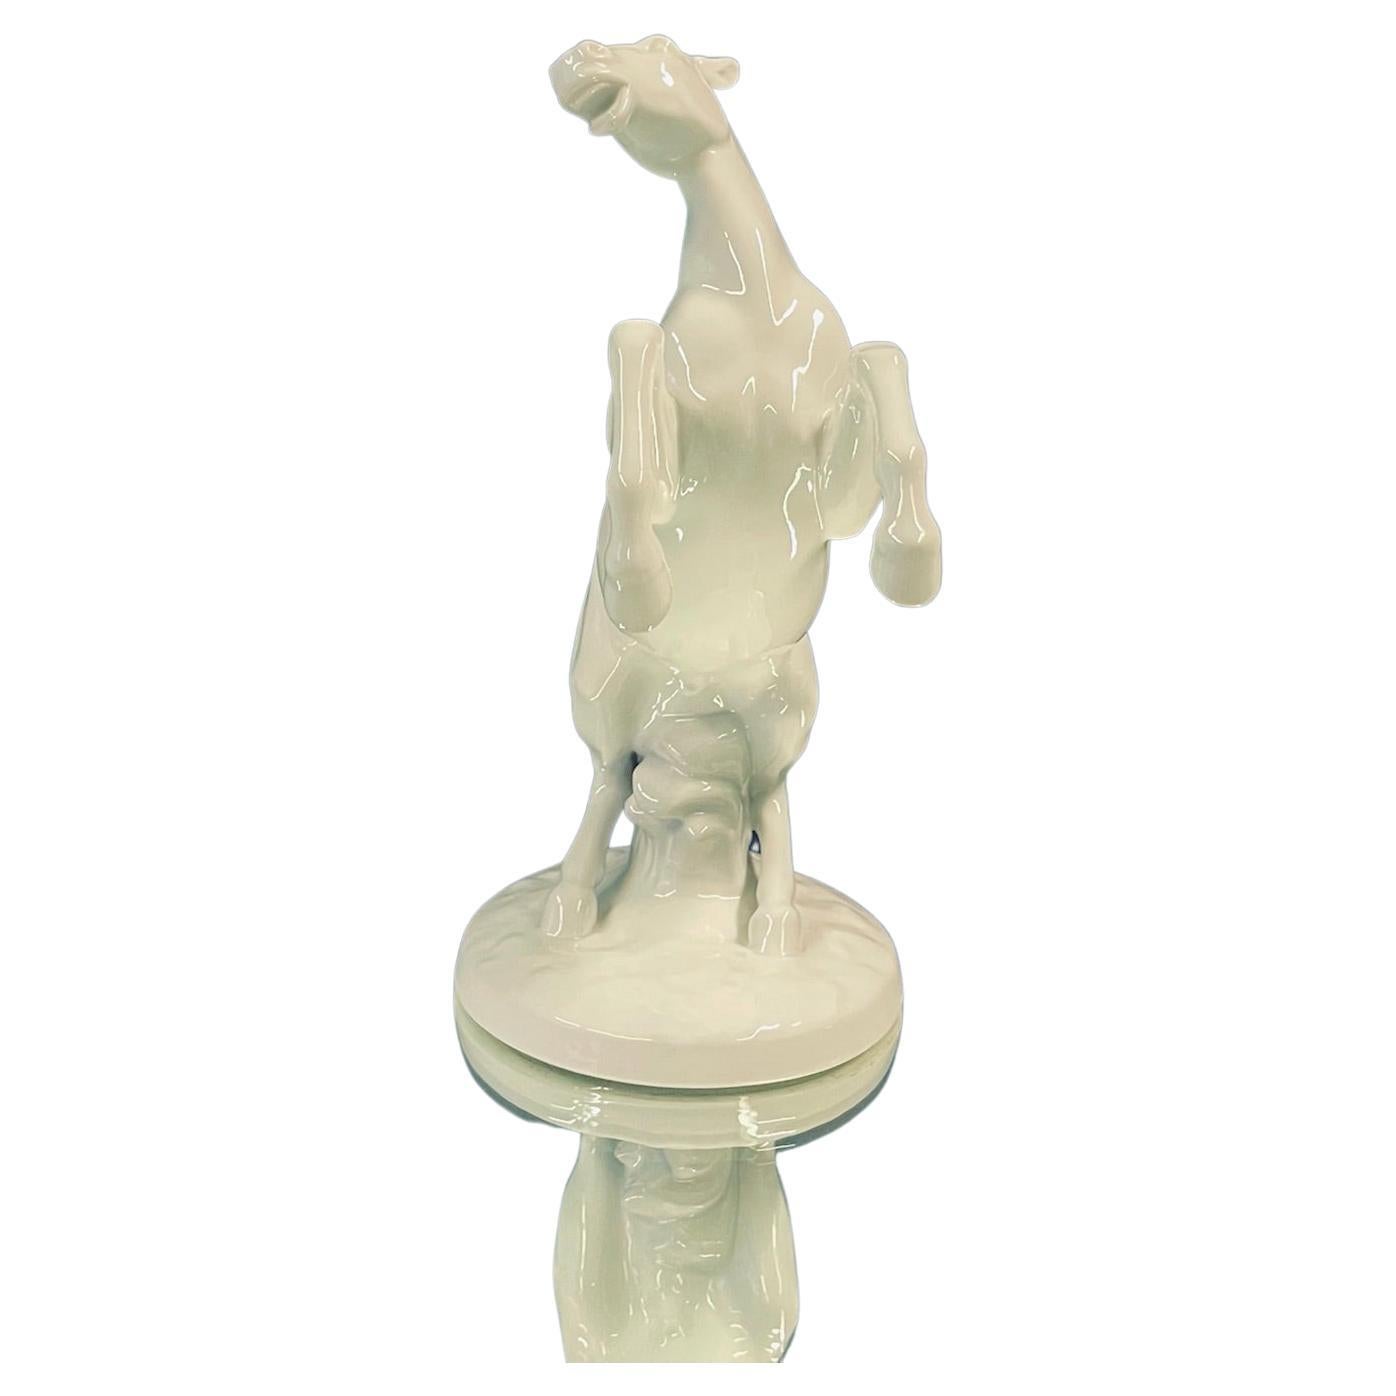 Porcelain Horse sculpture